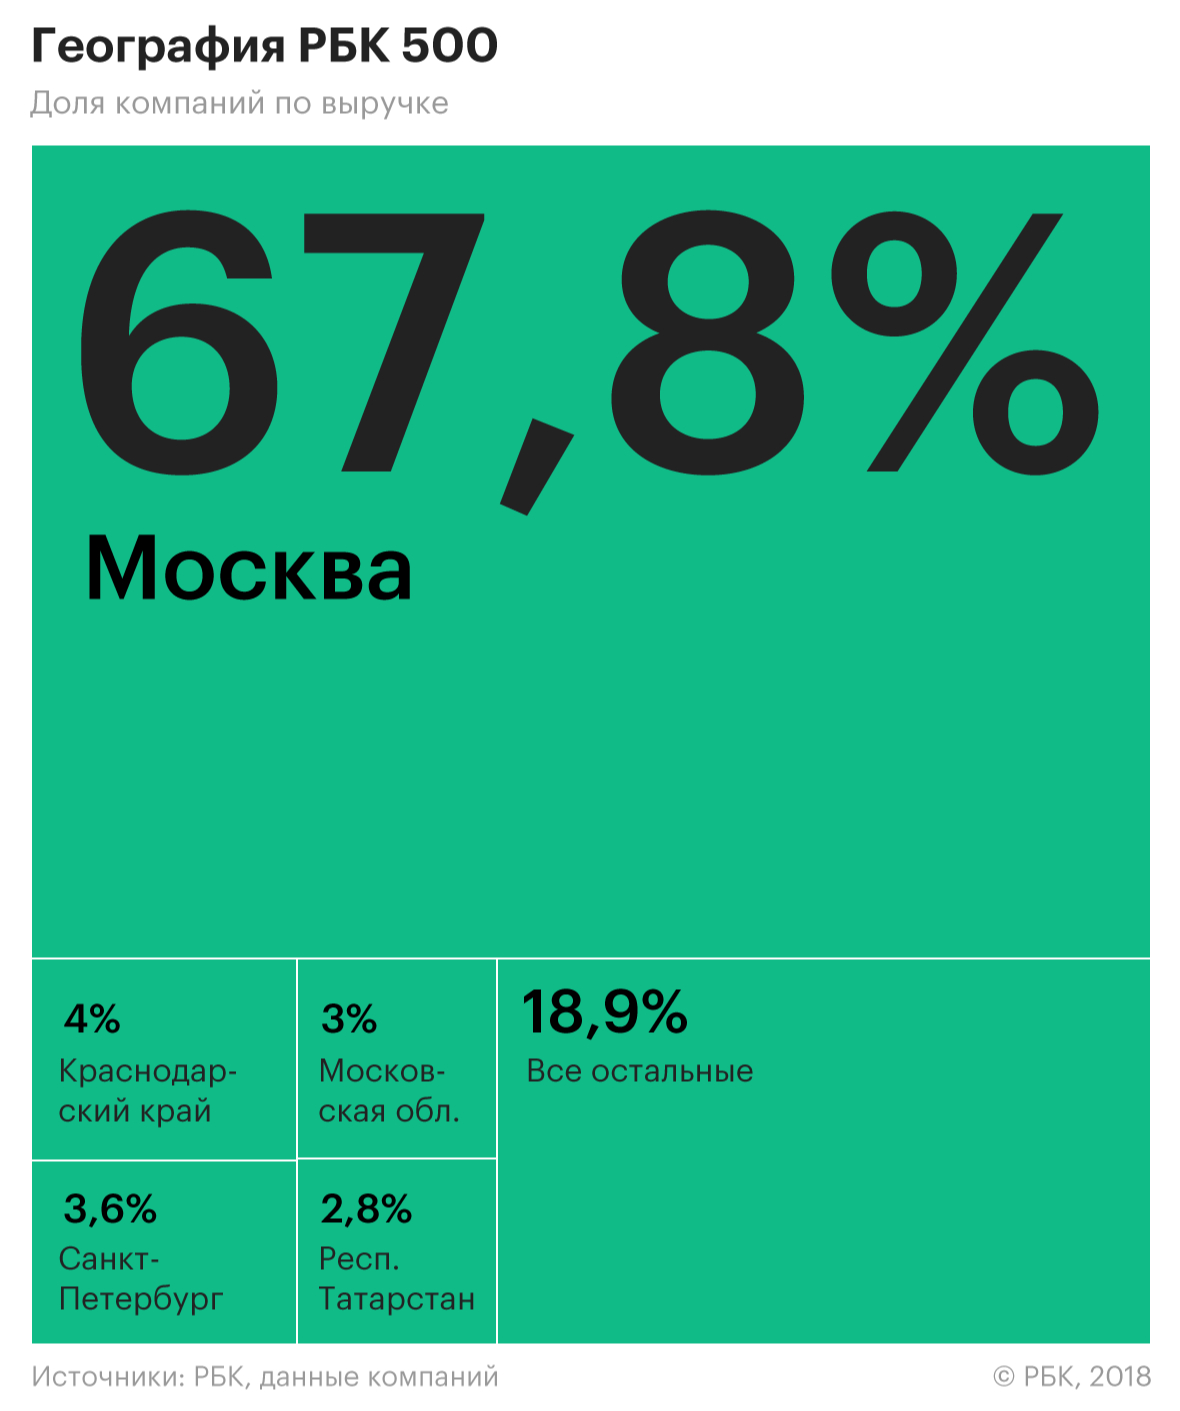 Почти 70% выручки крупнейших компаний оказалось сосредоточено в Москве